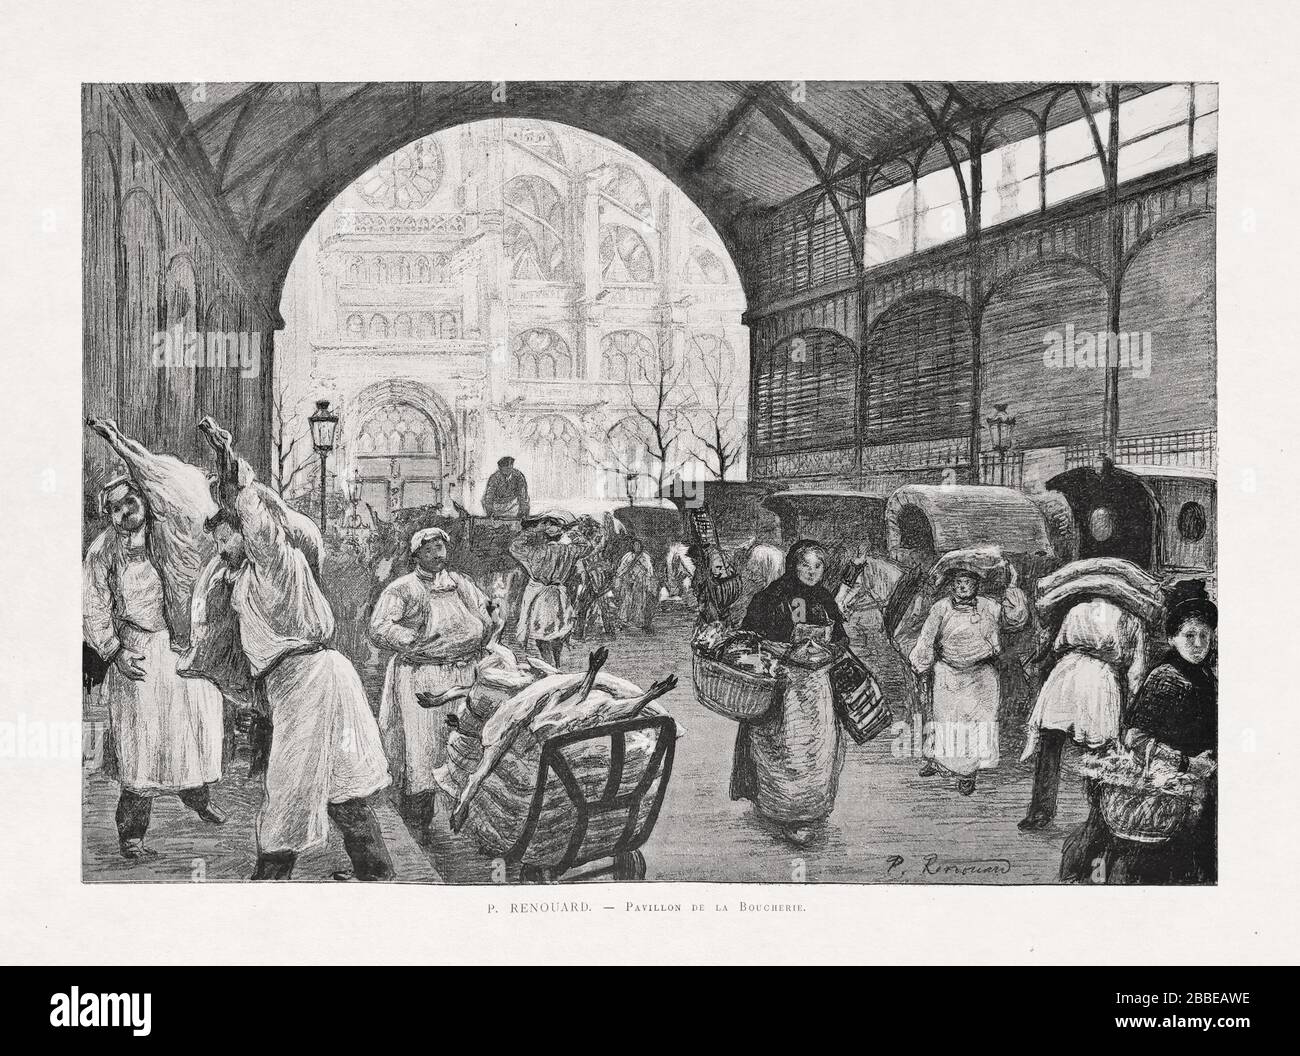 Illustrazione di un popolo in una sala del mercato intitolata 'Pavillon de la Boucherie' di P. Renouard pubblicato 1885 nella rivista mensile 'Paris Illustrator'. Foto Stock